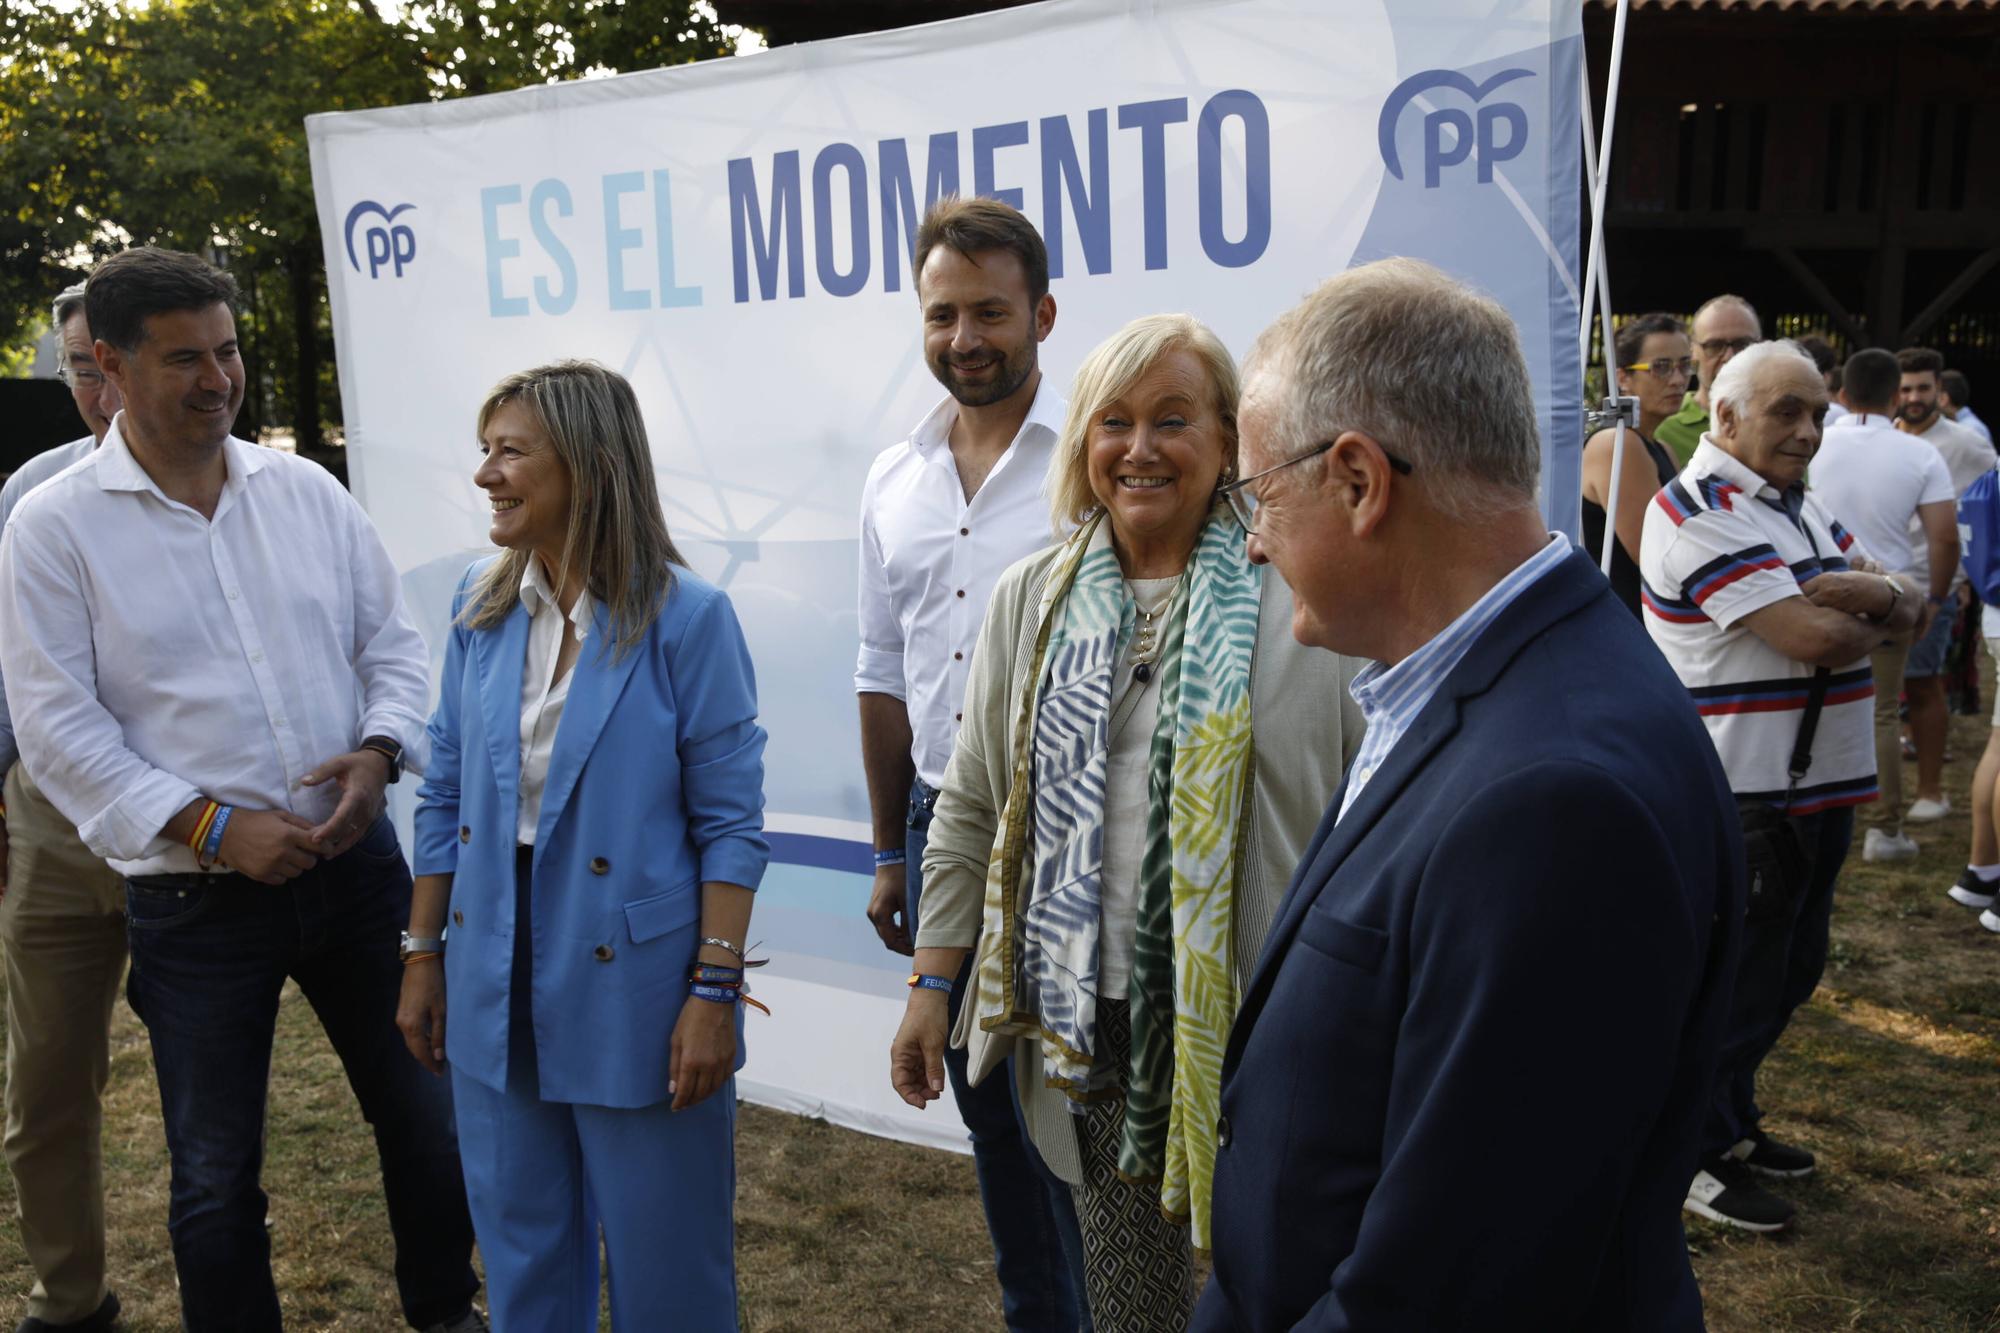 El cierre de campaña del PP de Asturias, en imágenes